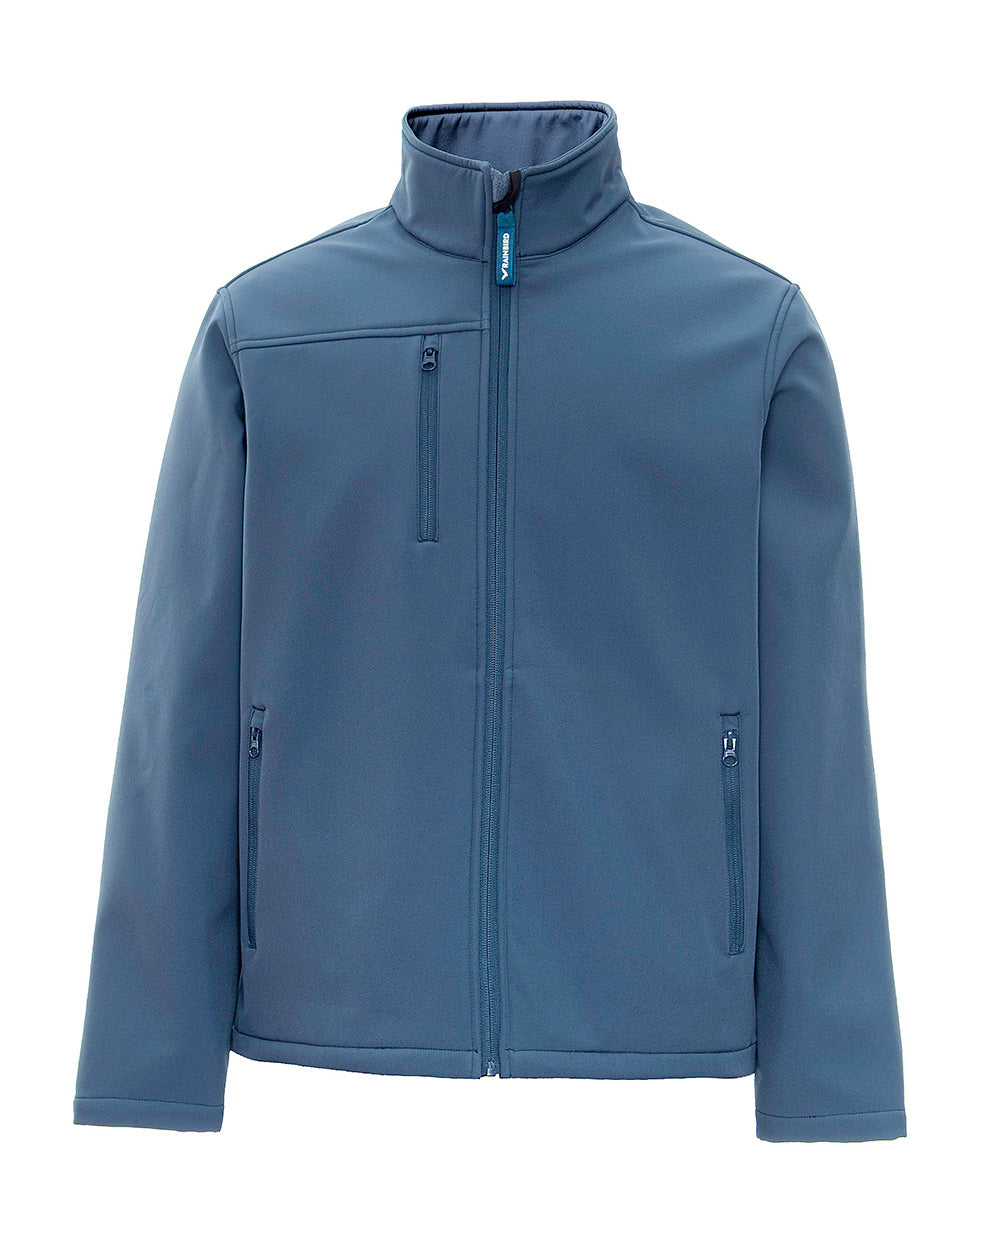 Dunstall Softshell Jacket in Storm Blue